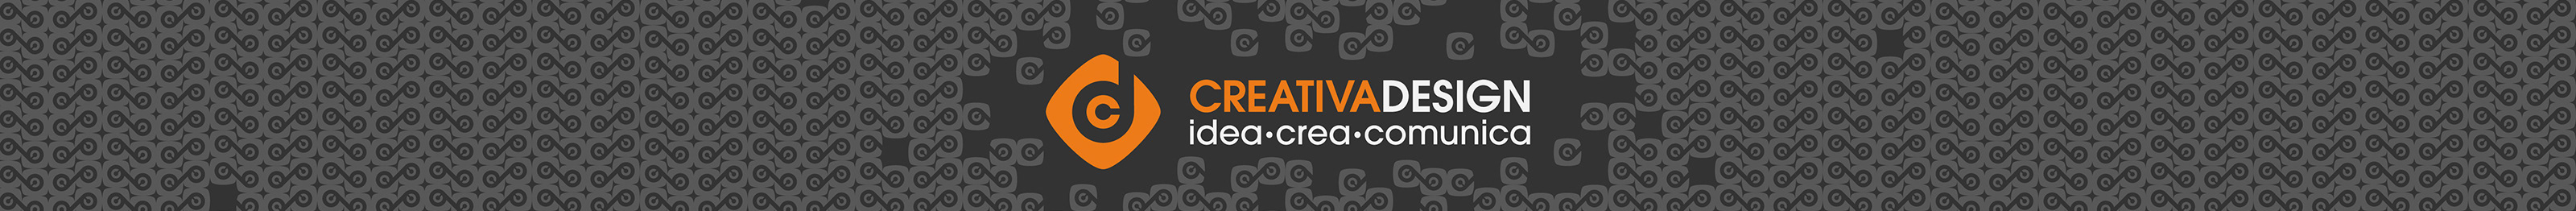 CREATIVA Design's profile banner